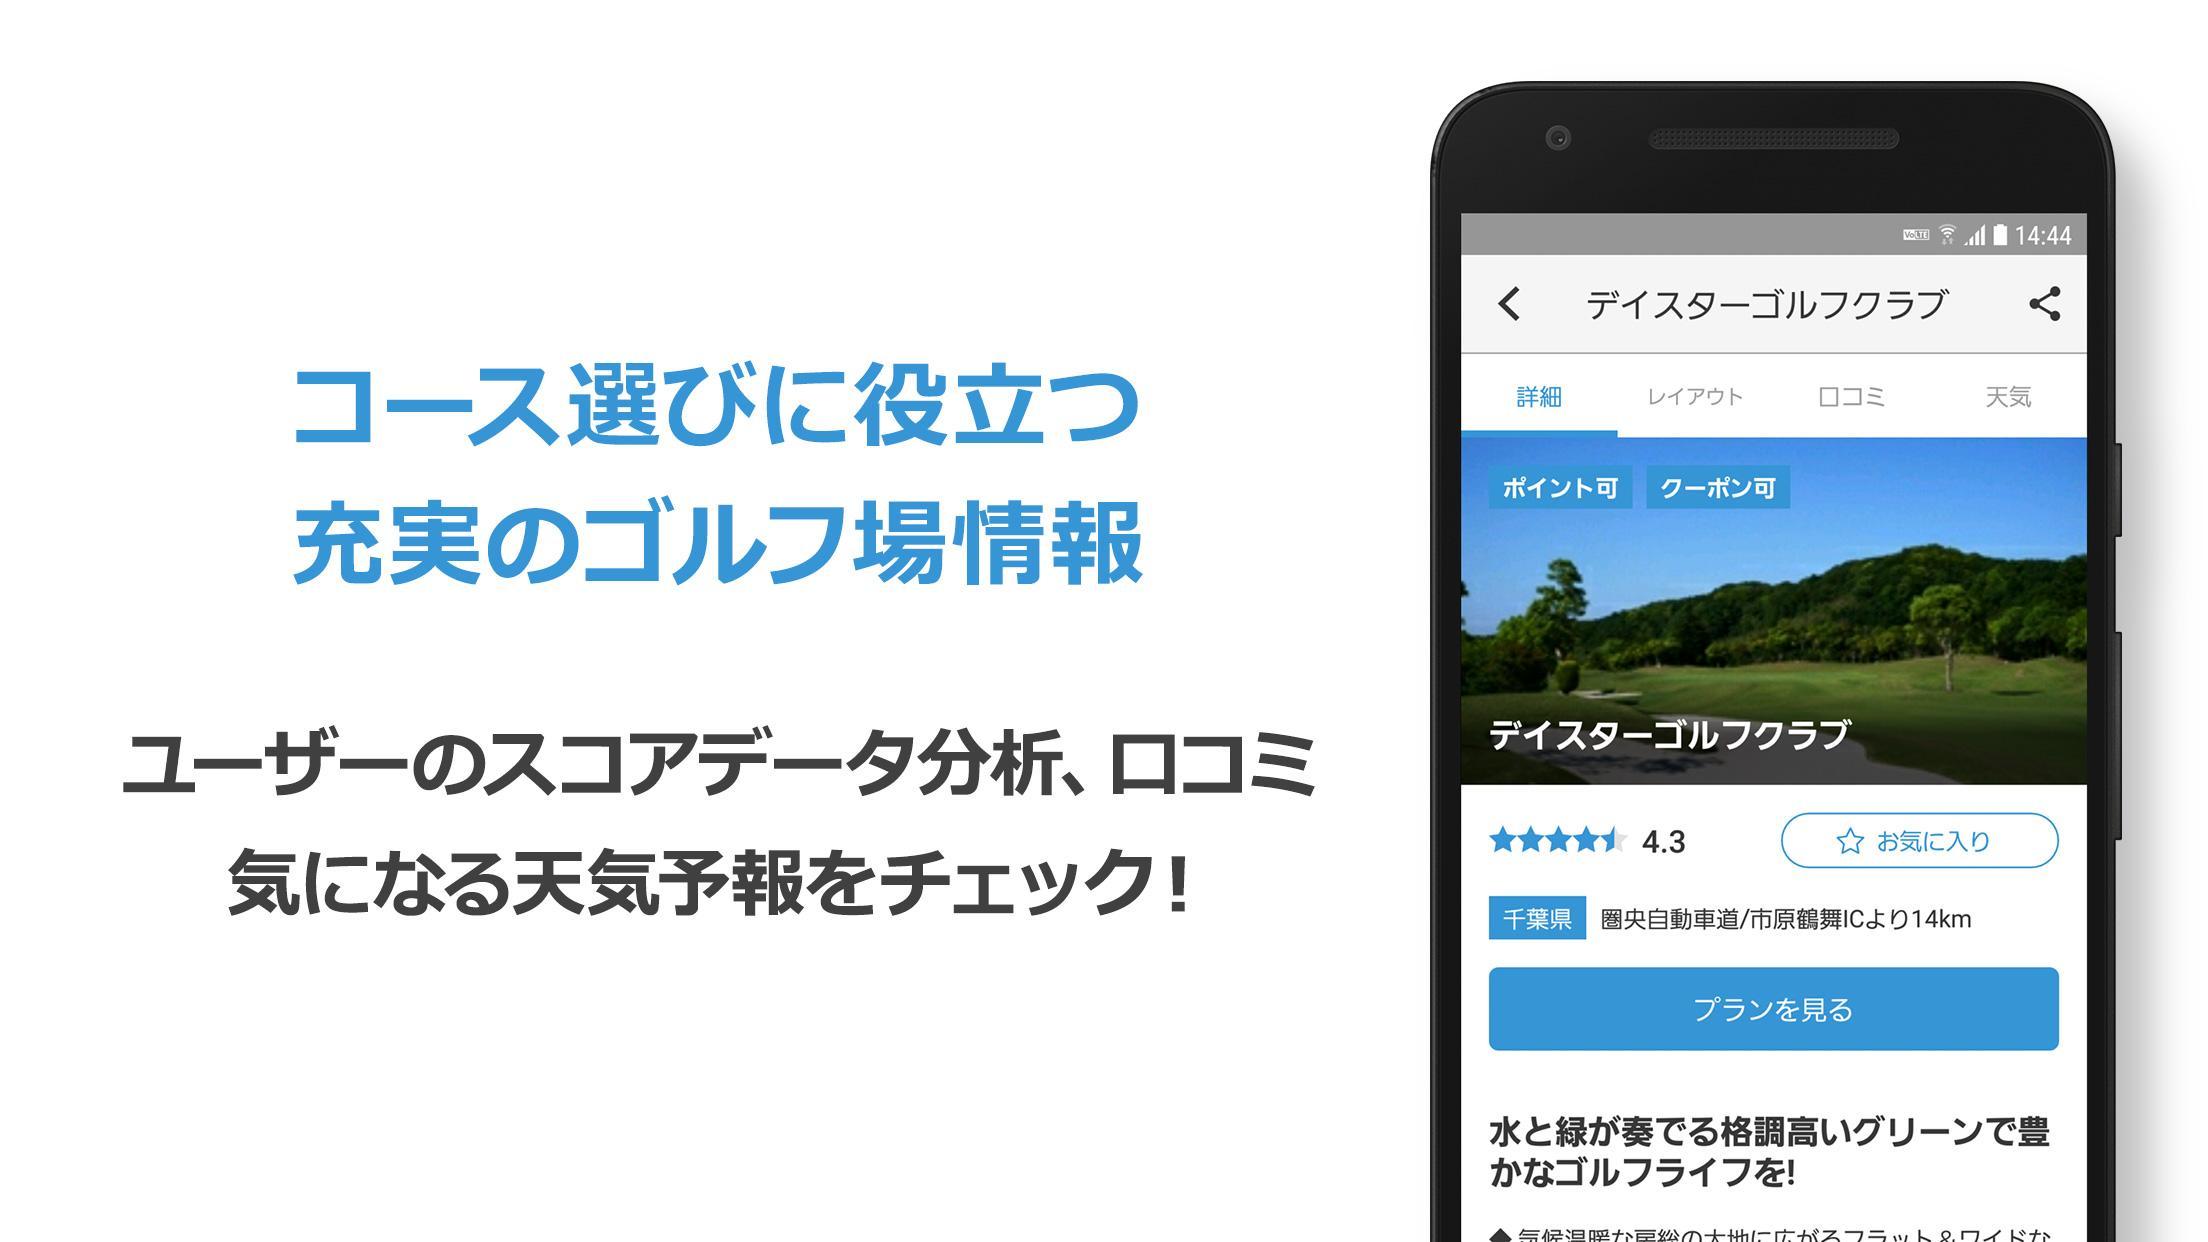 Android 用の ゴルフ場予約 -GDO(ゴルフダイジェスト・オンライン)- APK をダウンロード